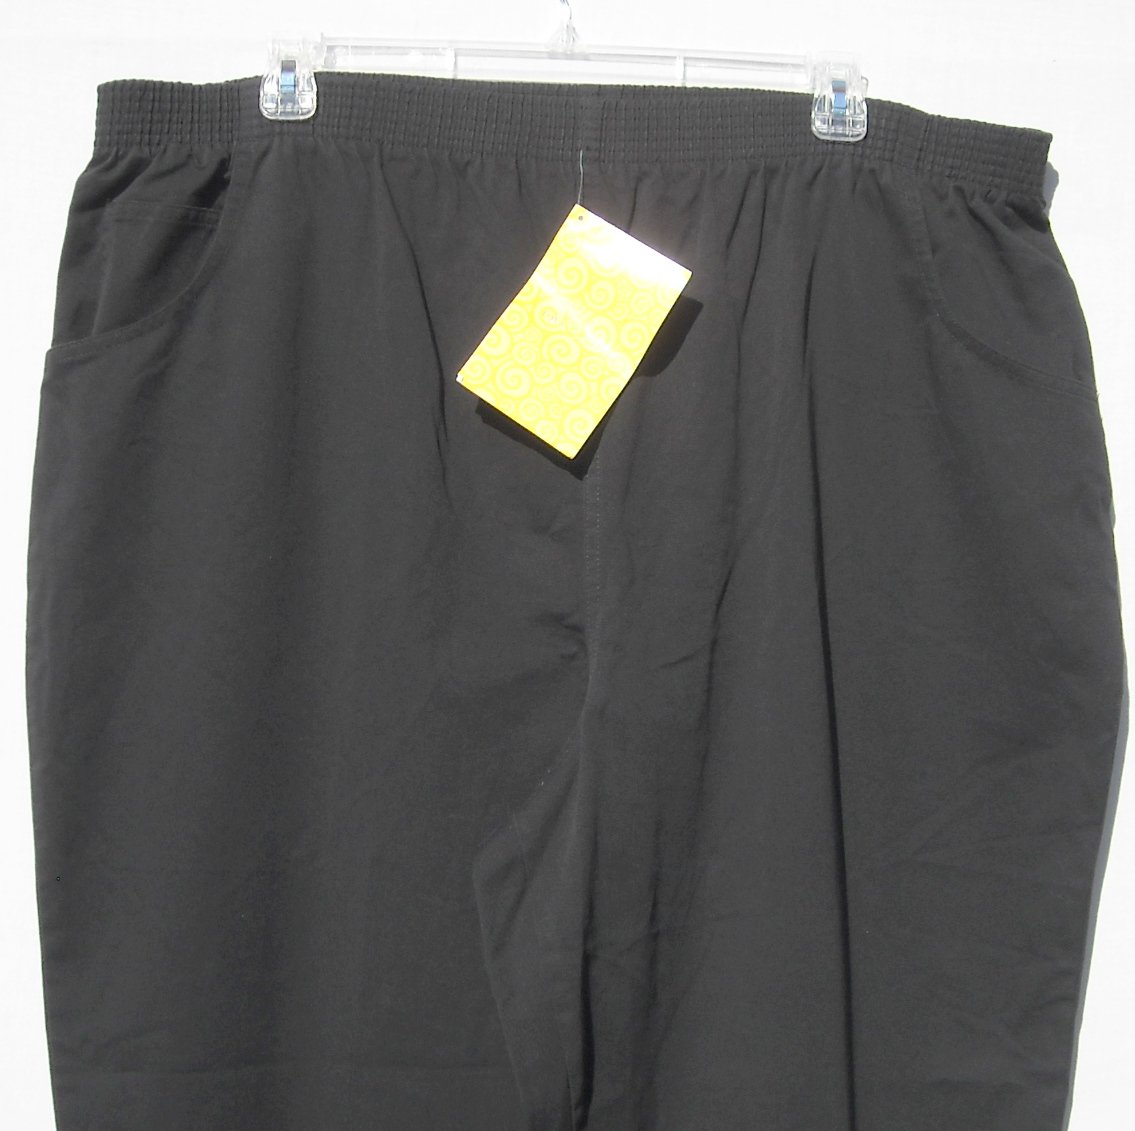 Signatures by Delta Burke QVC Women's Black Cotton Pants Plus size 3X NWT